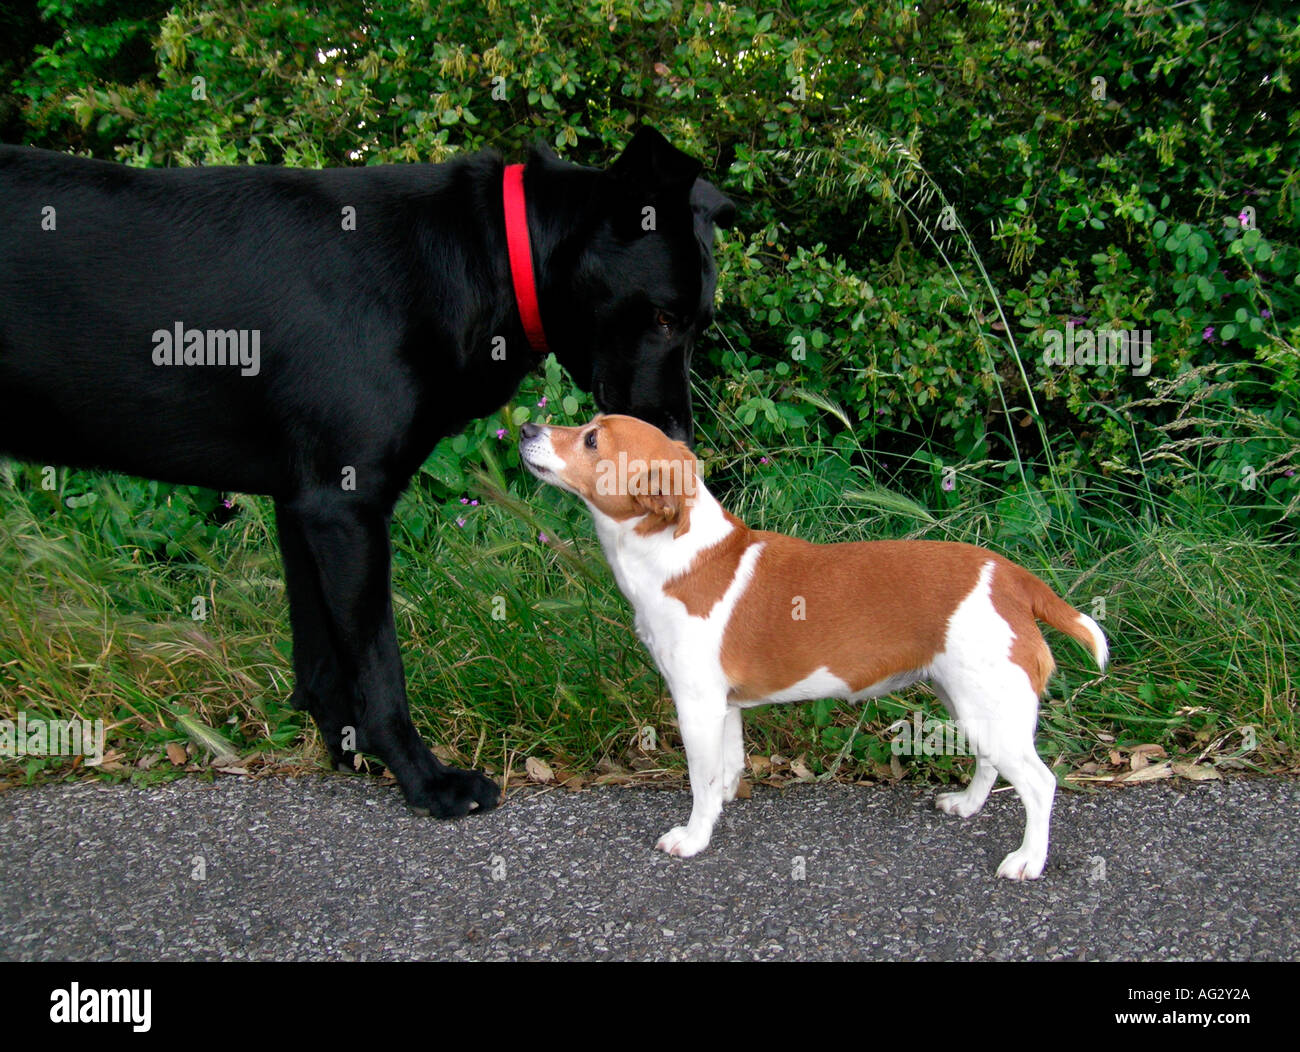 Herr PR großer schwarzer Hund entspricht einen kleinen braunen weißen Hund Stockfoto